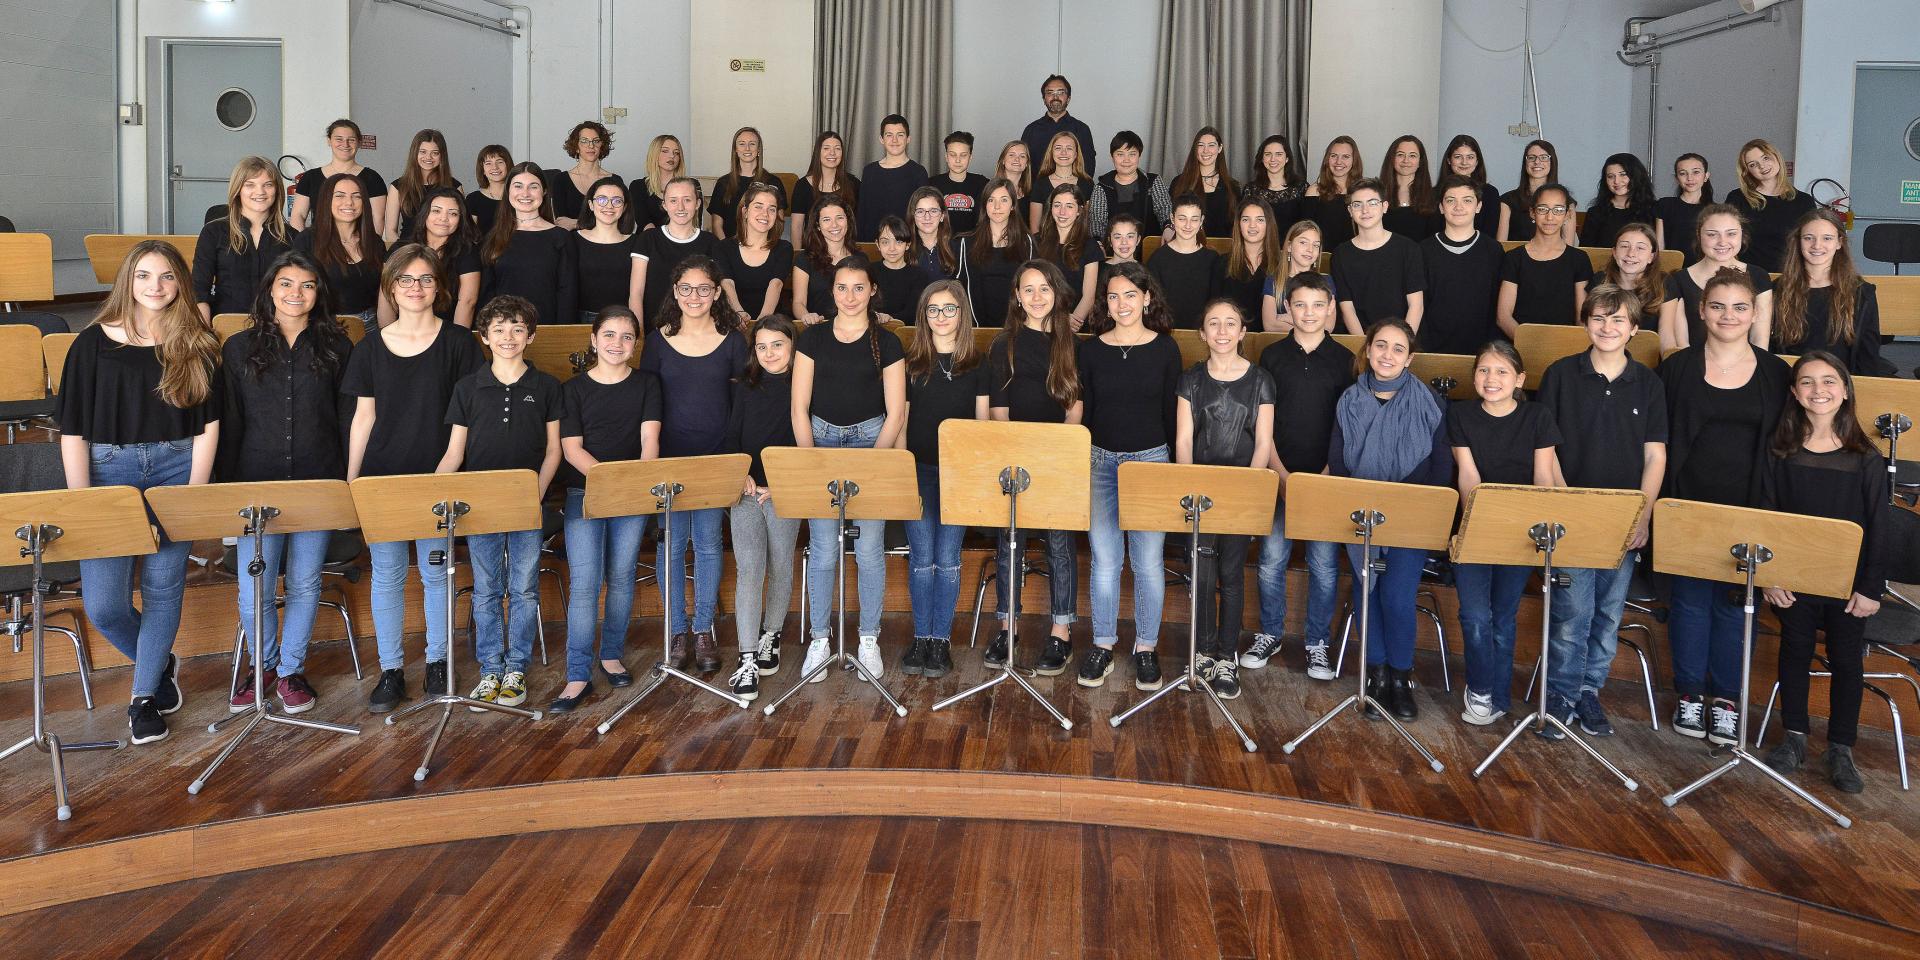 Children Chorus Teatro Regio Torino and Conservatory 'G. Verdi' with the chorus master Claudio Fenoglio